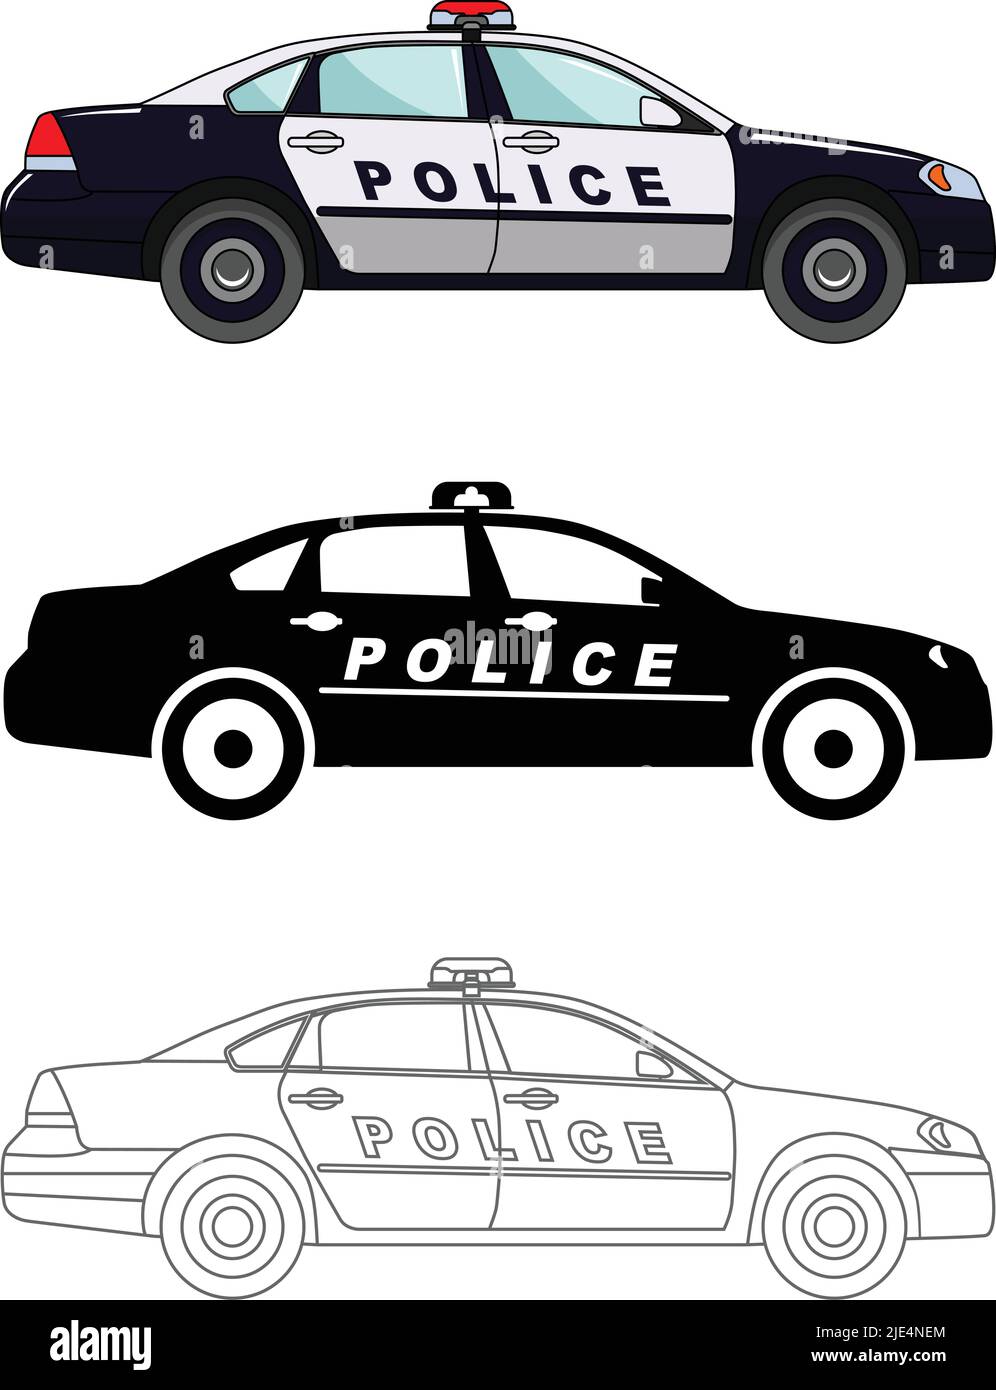 Imagen De Icono De Placa De Policía De Bronce, Ilustración Vectorial  Ilustraciones svg, vectoriales, clip art vectorizado libre de derechos.  Image 70572527